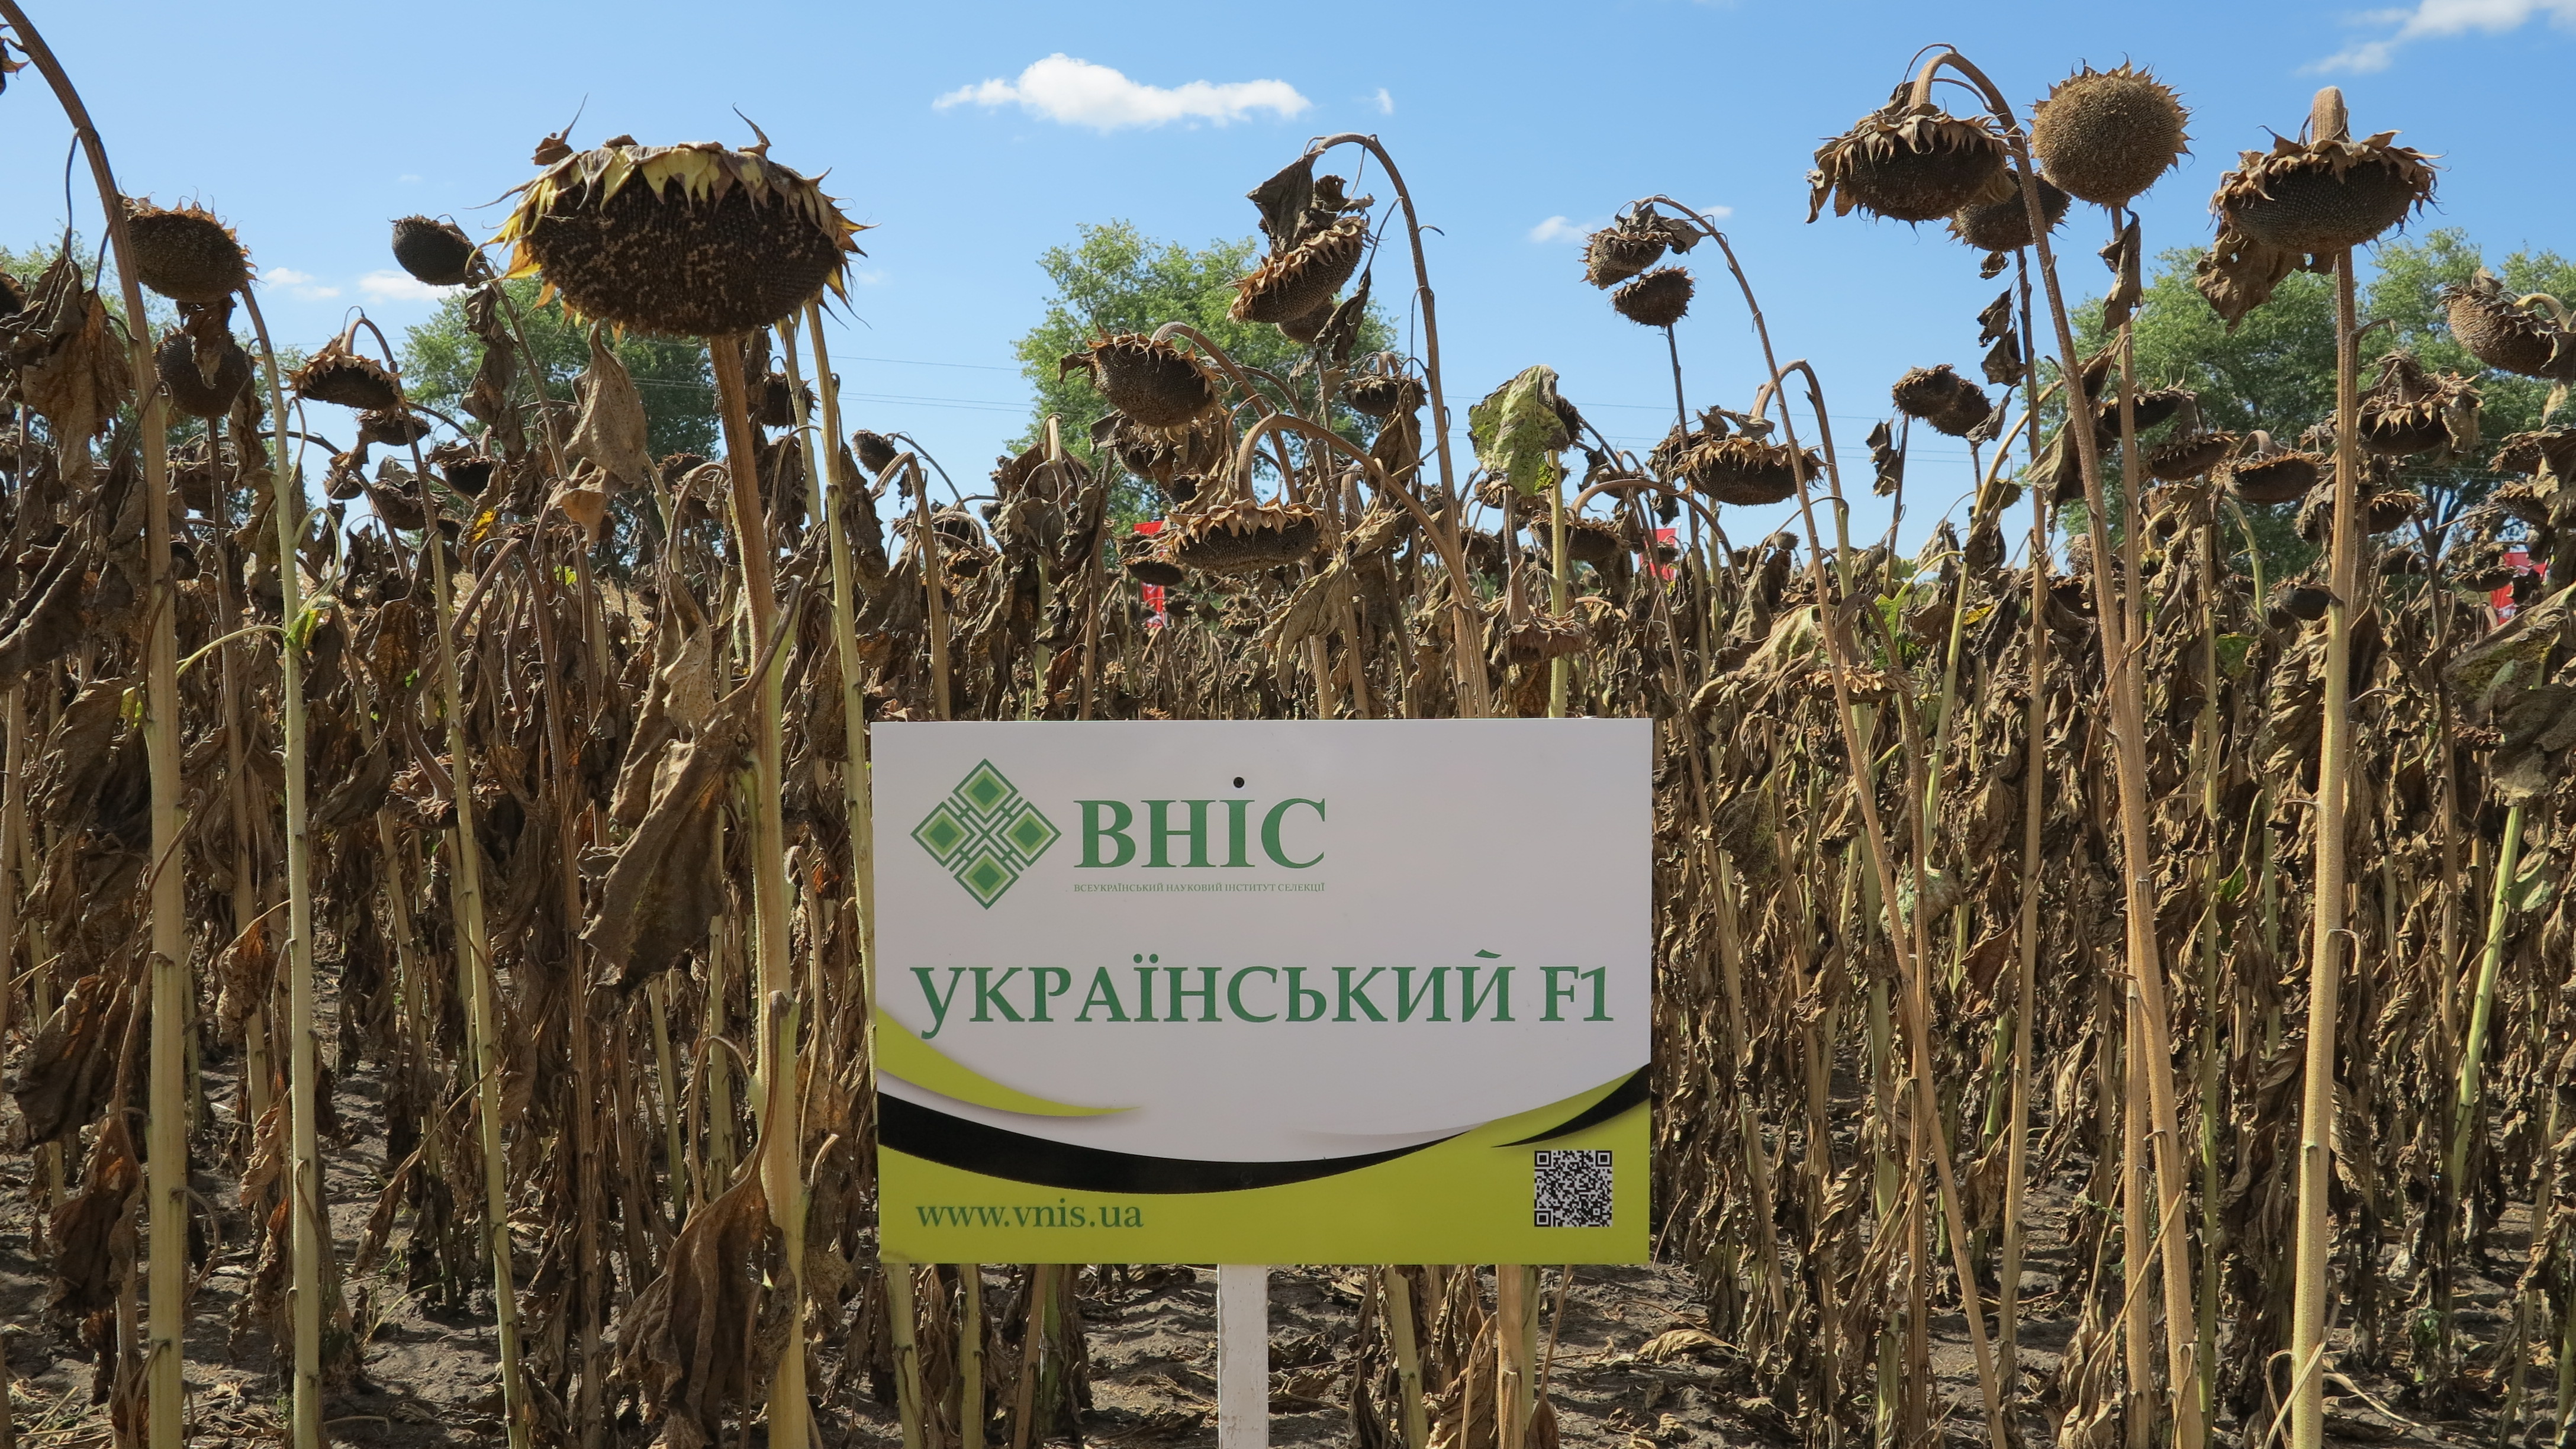 Семена подсолнечника Украинский F1 ВНИС от производителя